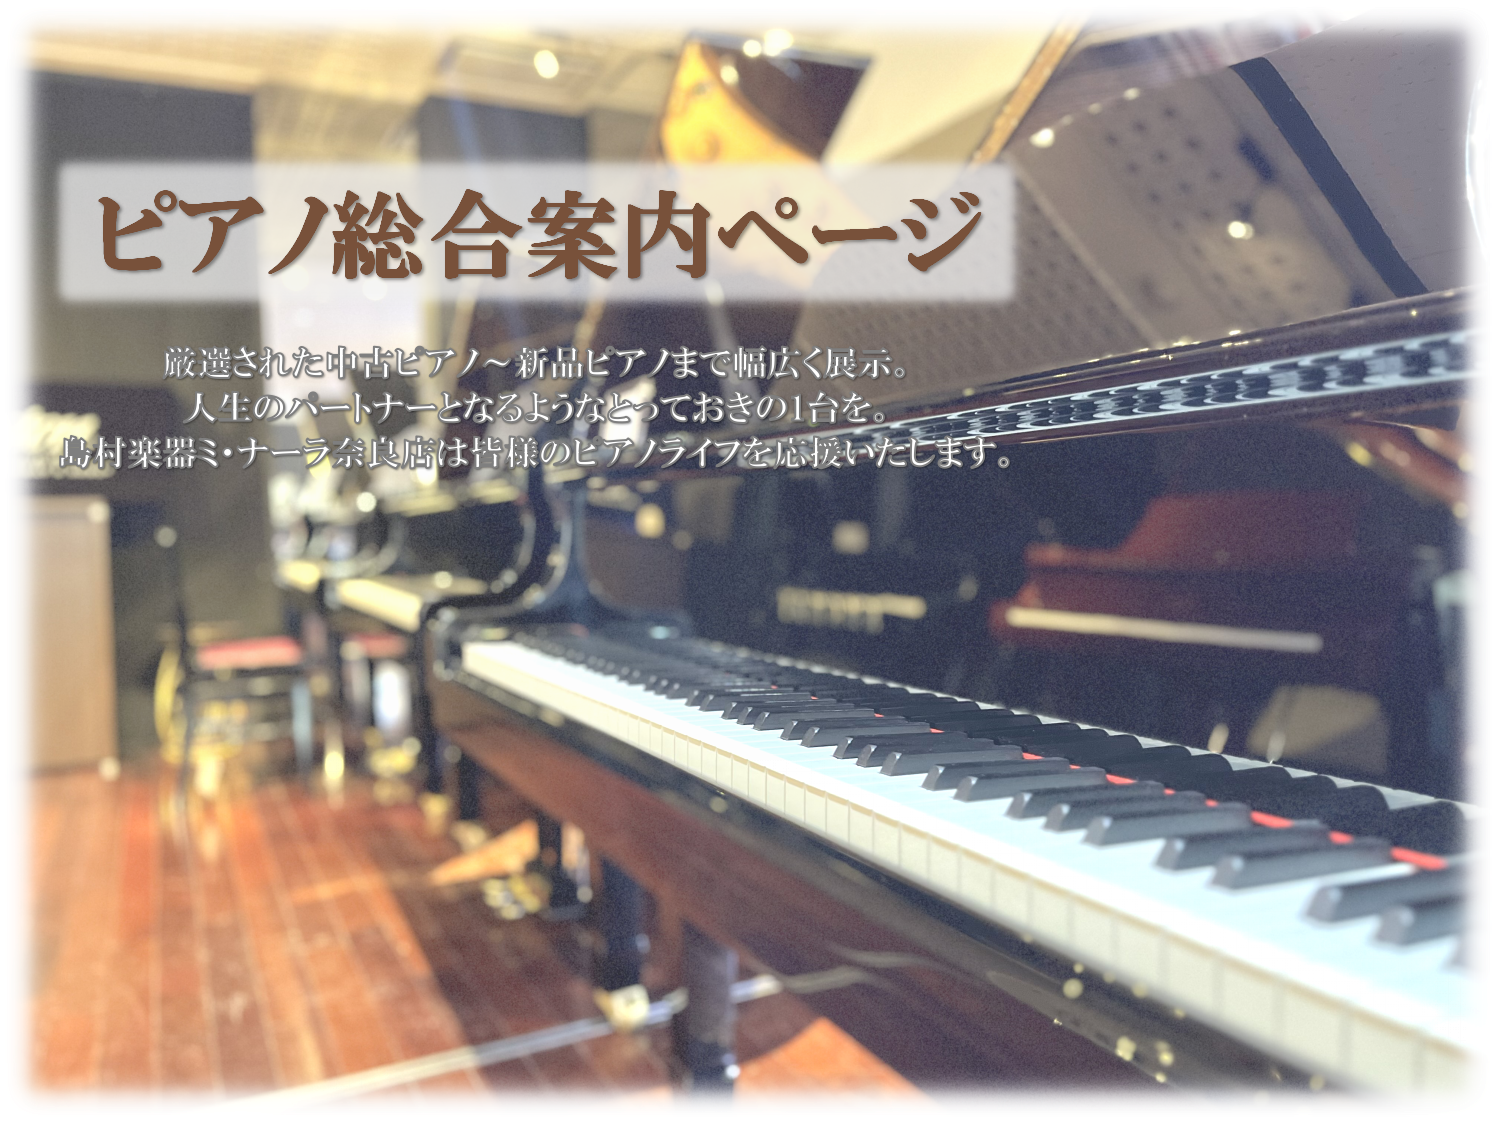 当店のピアノ展示コーナーのご紹介 ピアノ選びは島村楽器 奈良店まで 島村楽器奈良店 店長の山田と申します。ピアノ紹介ページをご覧頂き、誠にありがとうございます。ピアノをご検討しはじめた時に「まずは、奈良店に行ってピアノを見てみよう！相談してみよう！」と、思っていただけるような、お店作りを心掛けており […]